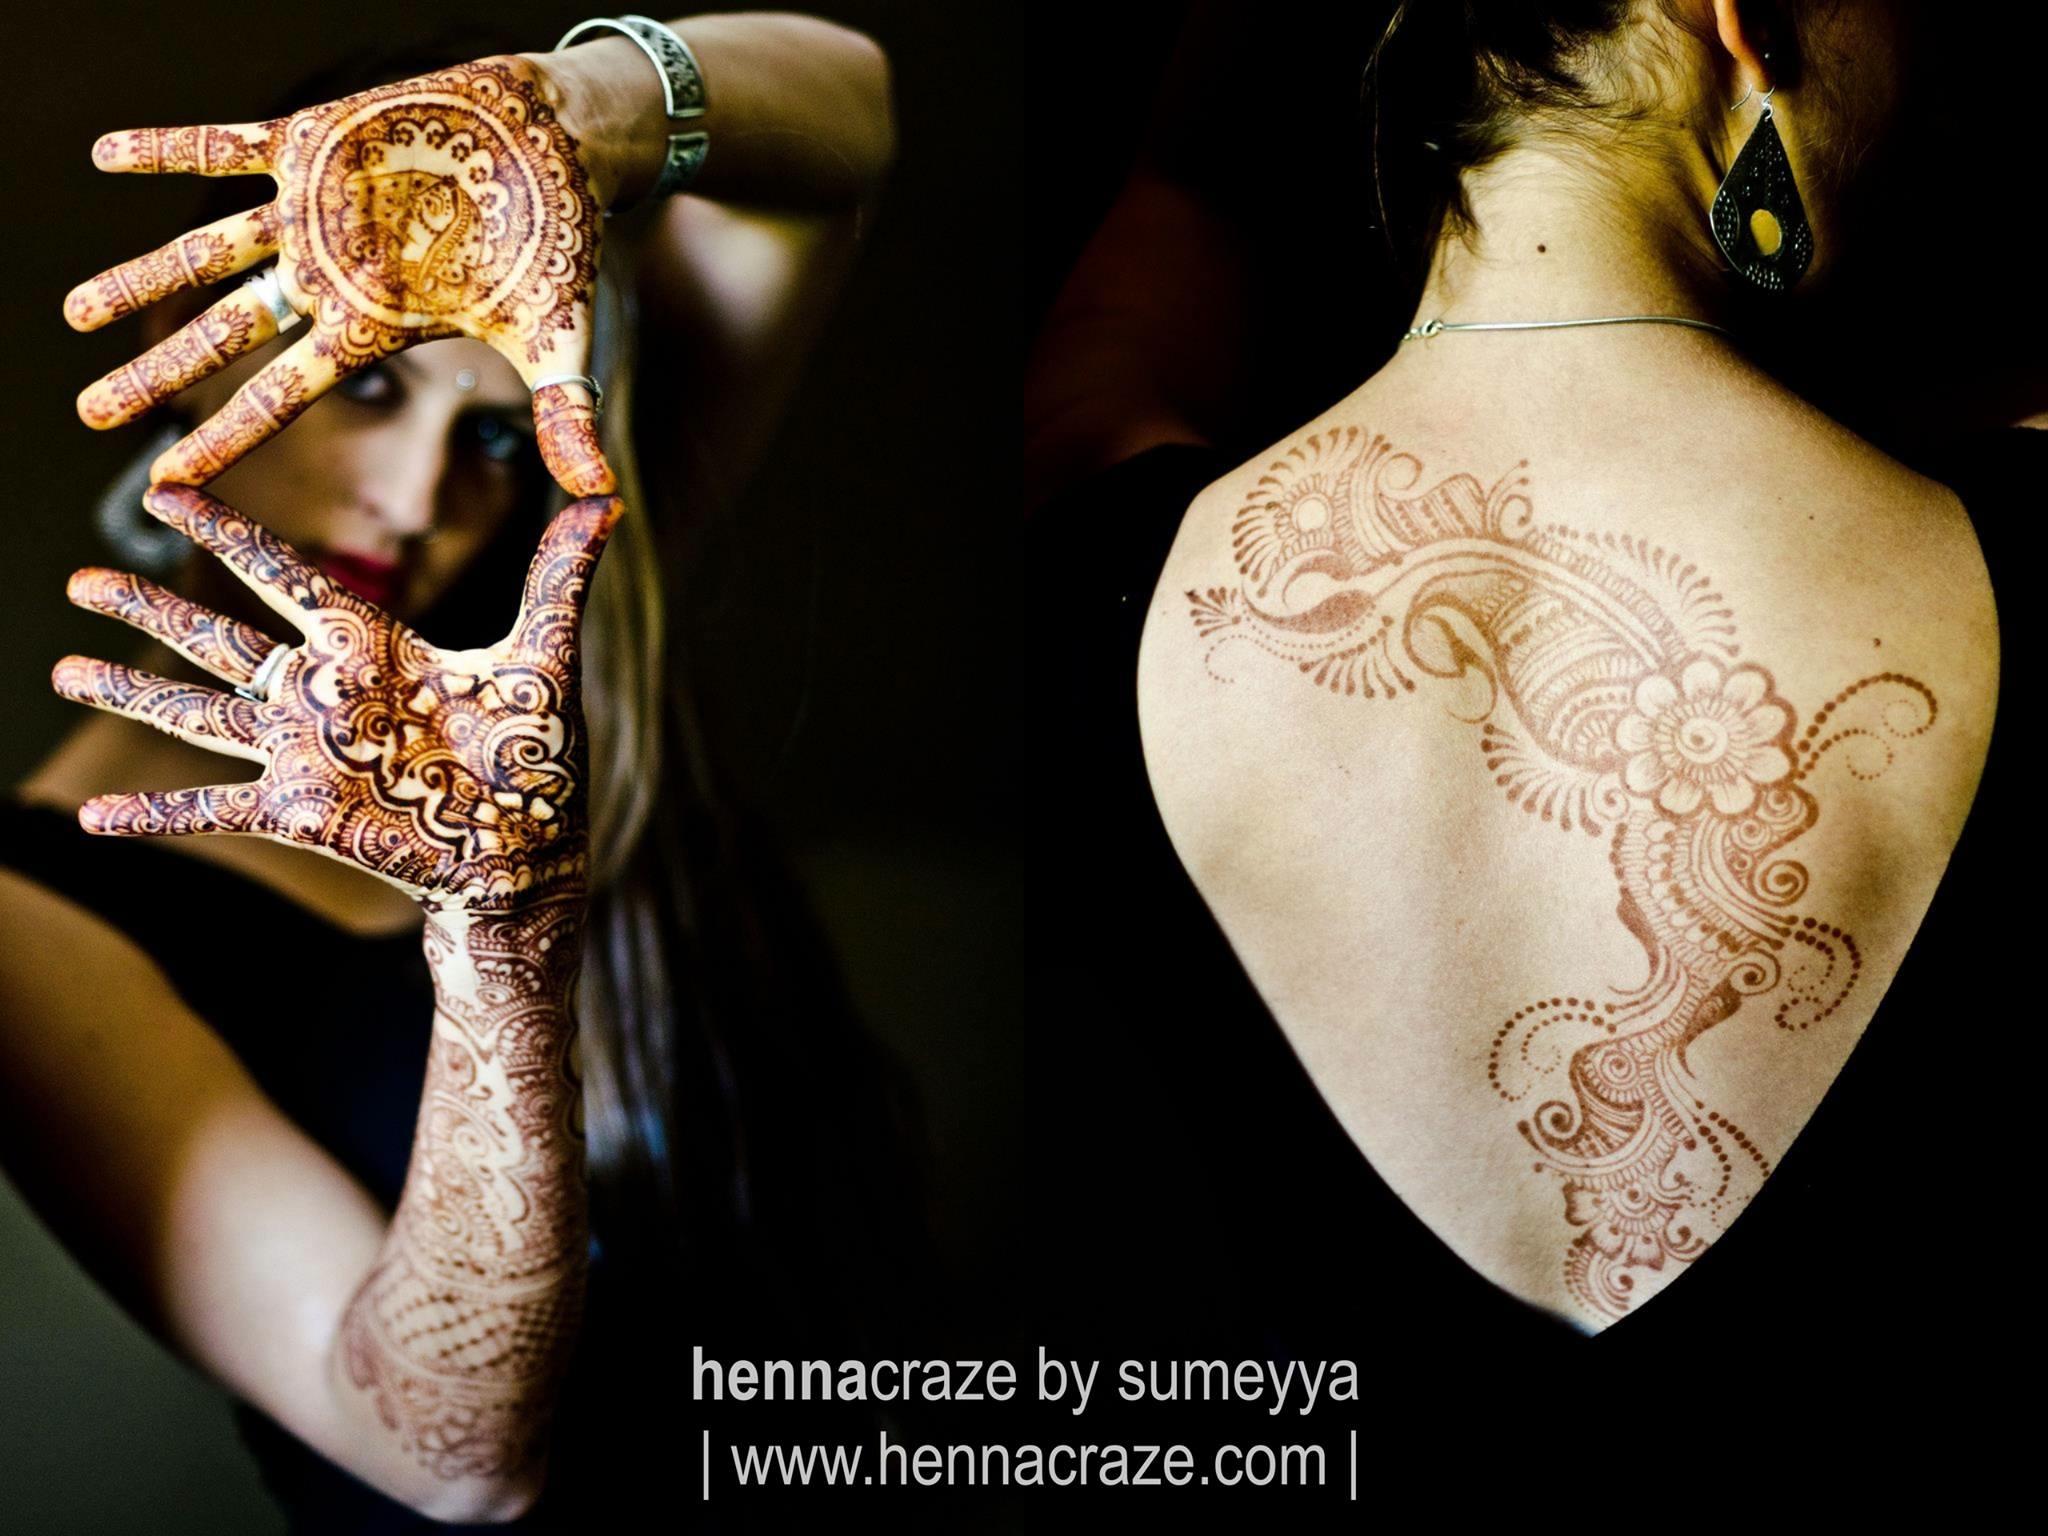 henna craze sumeyya bridgette